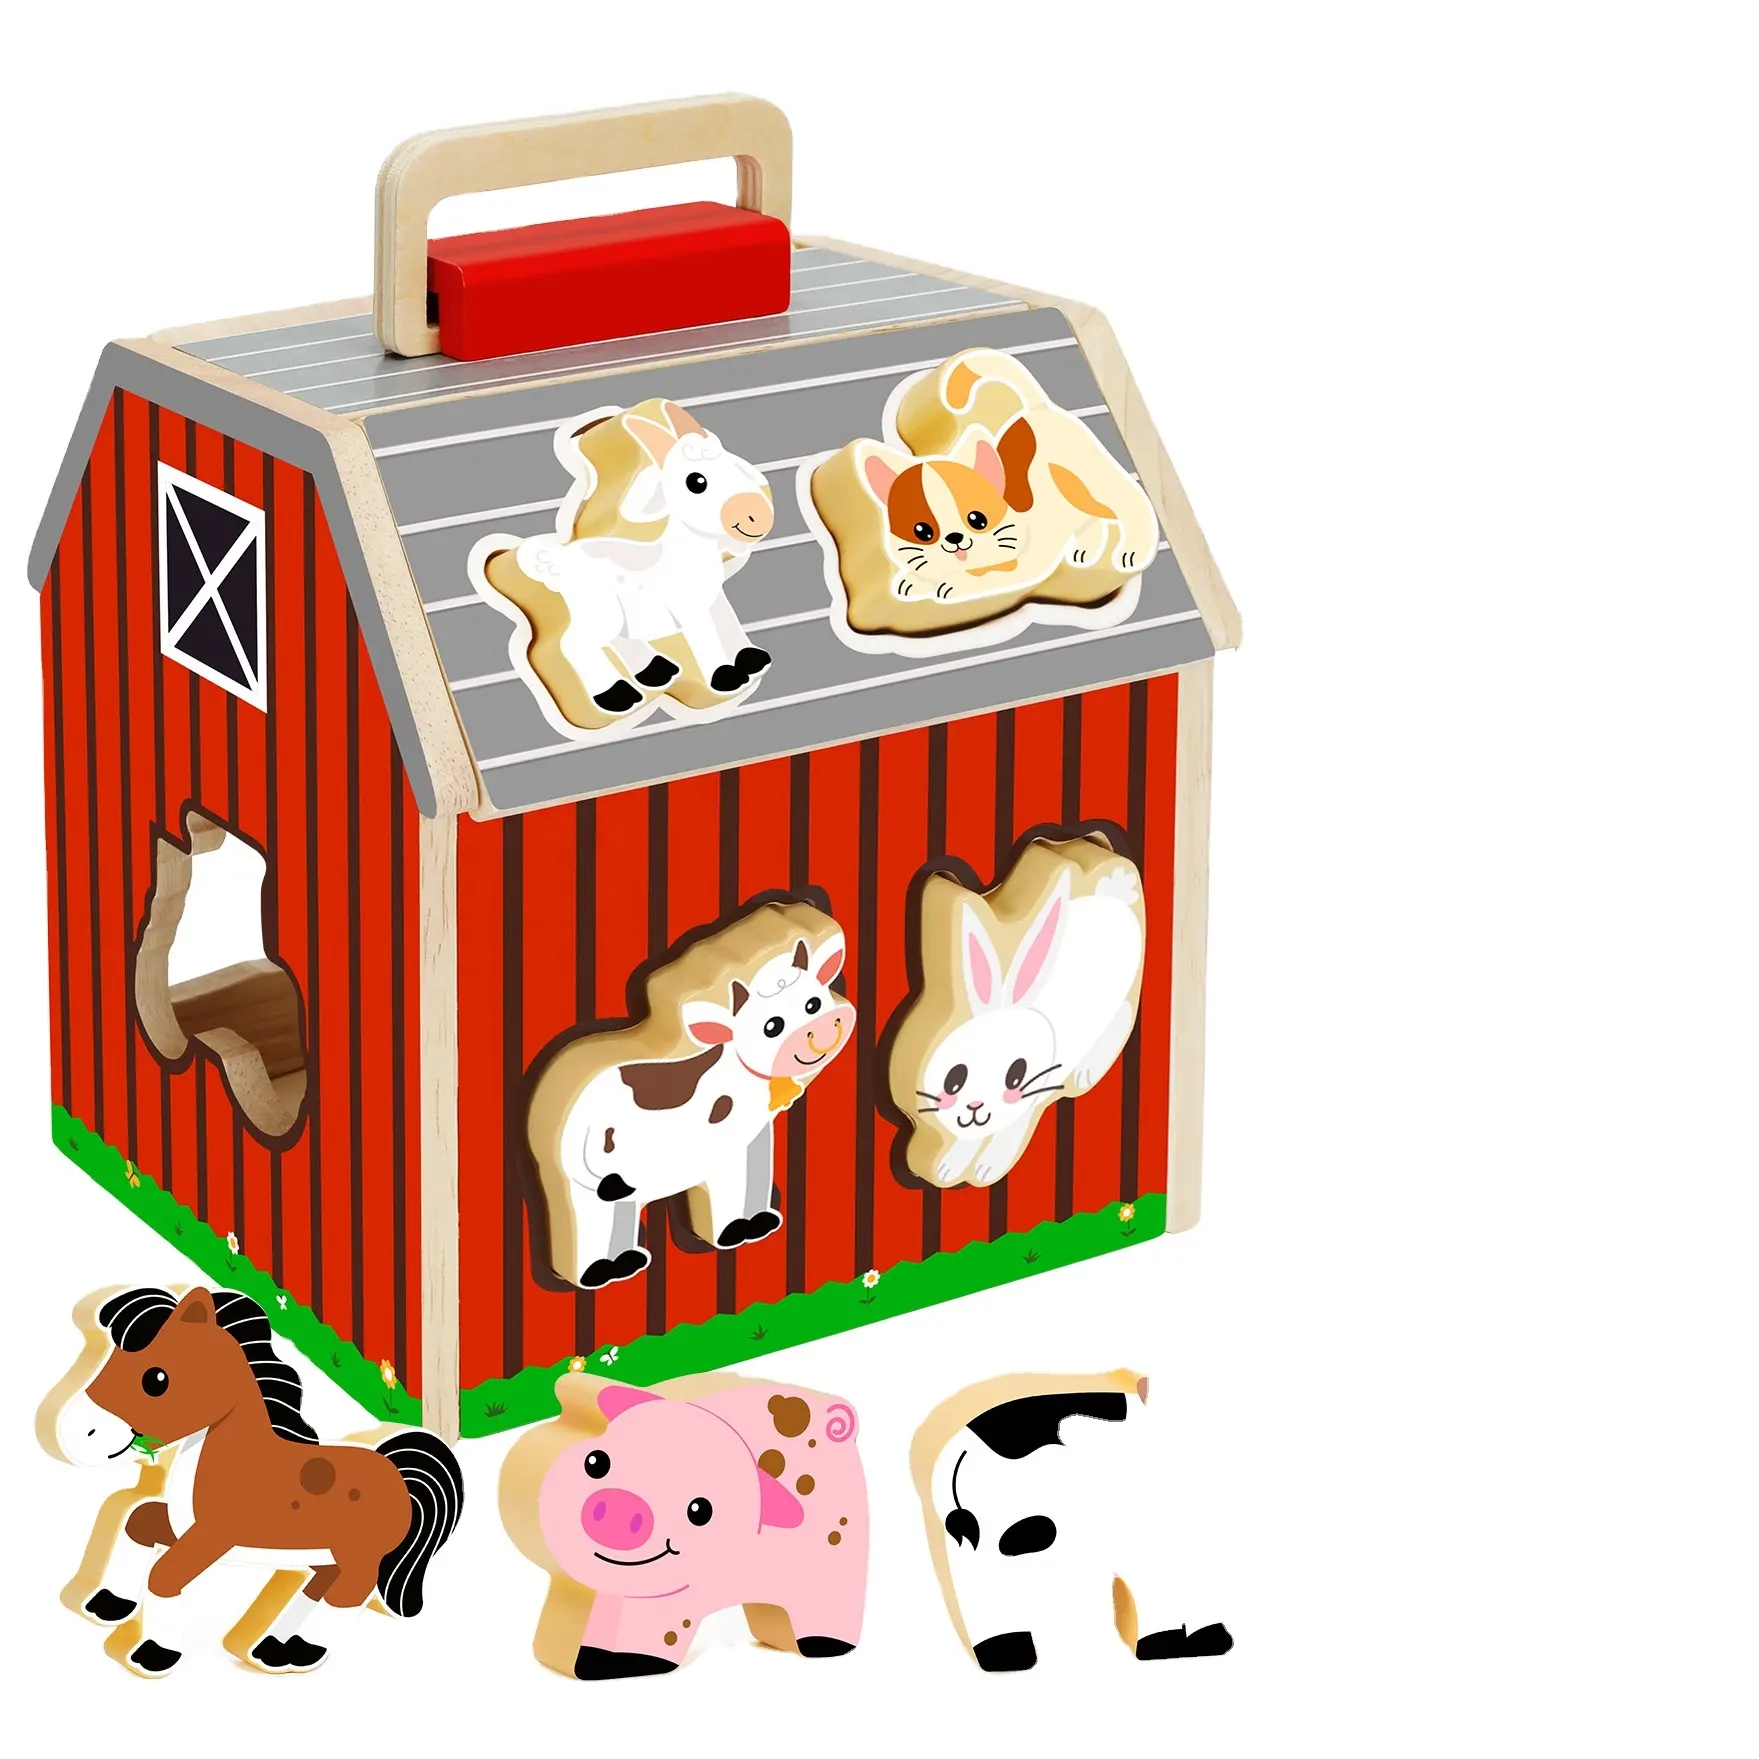 C02035 juguetes de granja de madera para niños pequeños gran oferta Animal a juego clasificación granero animales de granja juego preescolar aprendizaje educativo